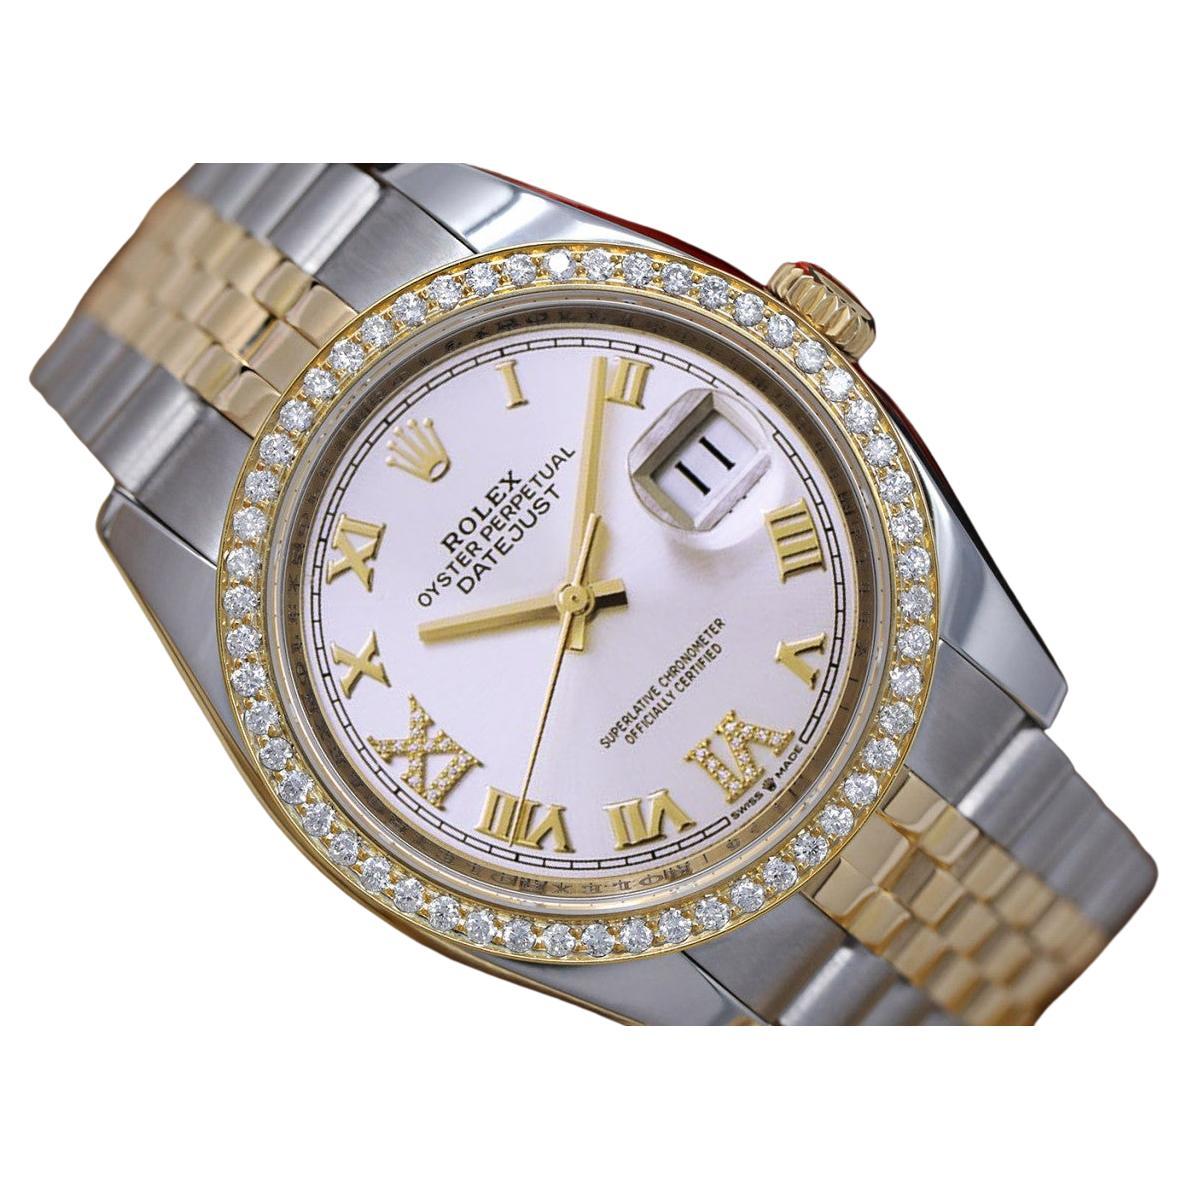 Rolex Datejust, montre bicolore avec cadran romain et lunette en diamants blancs